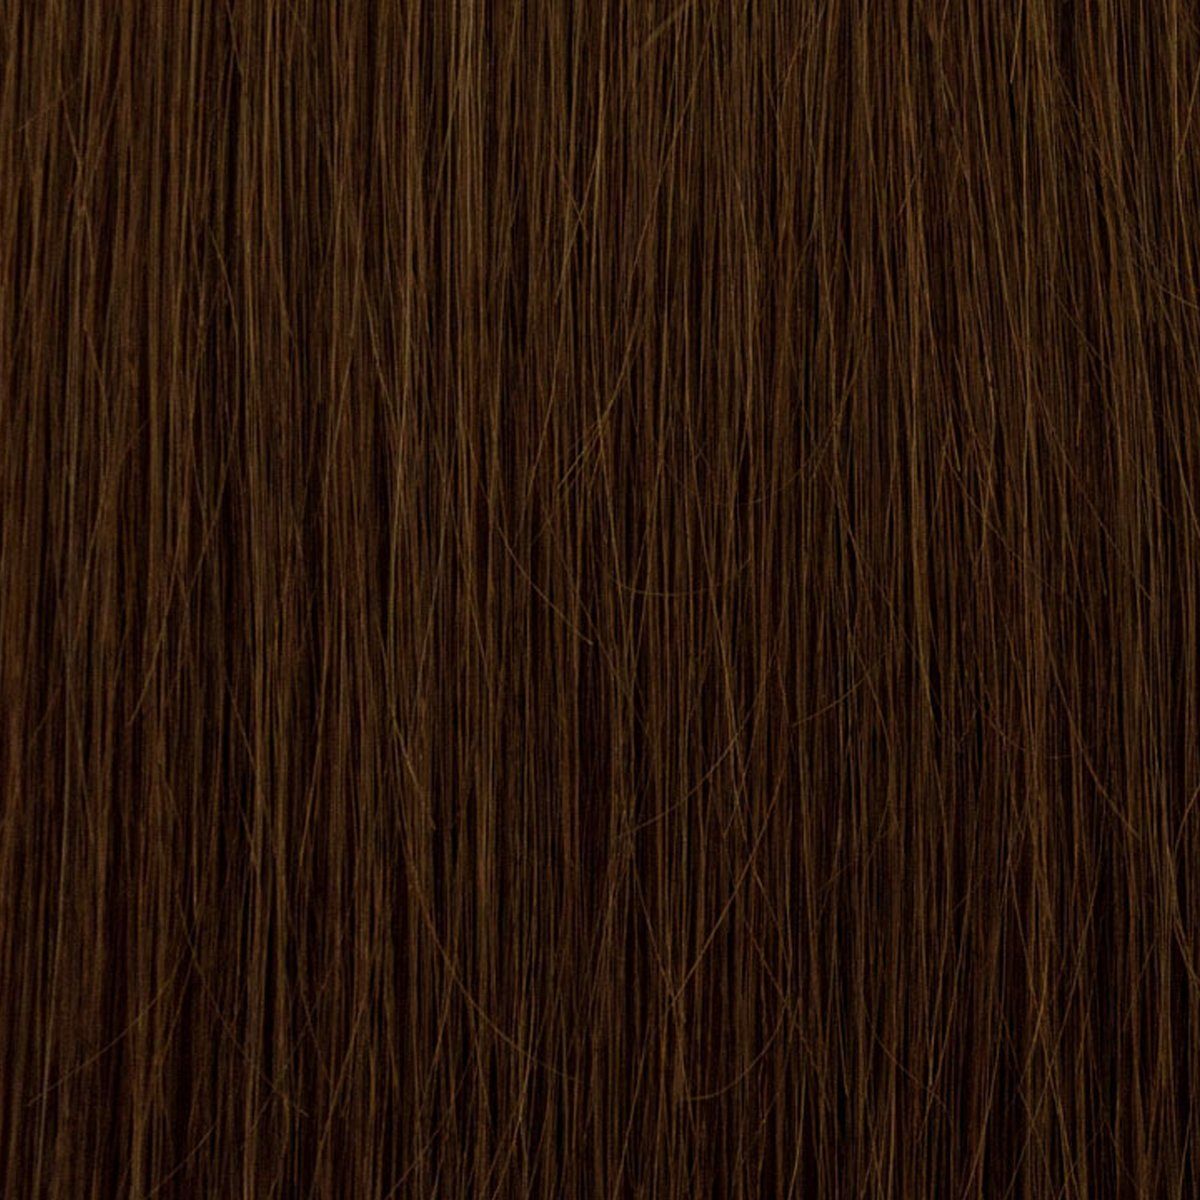 Set 60 130 Gramm, 06 Haarverlängerung haselnussbraun Echthaar-Extension mit - cm 7-teiliges Clip-in-Extensions, Echthaar Echthaar EH